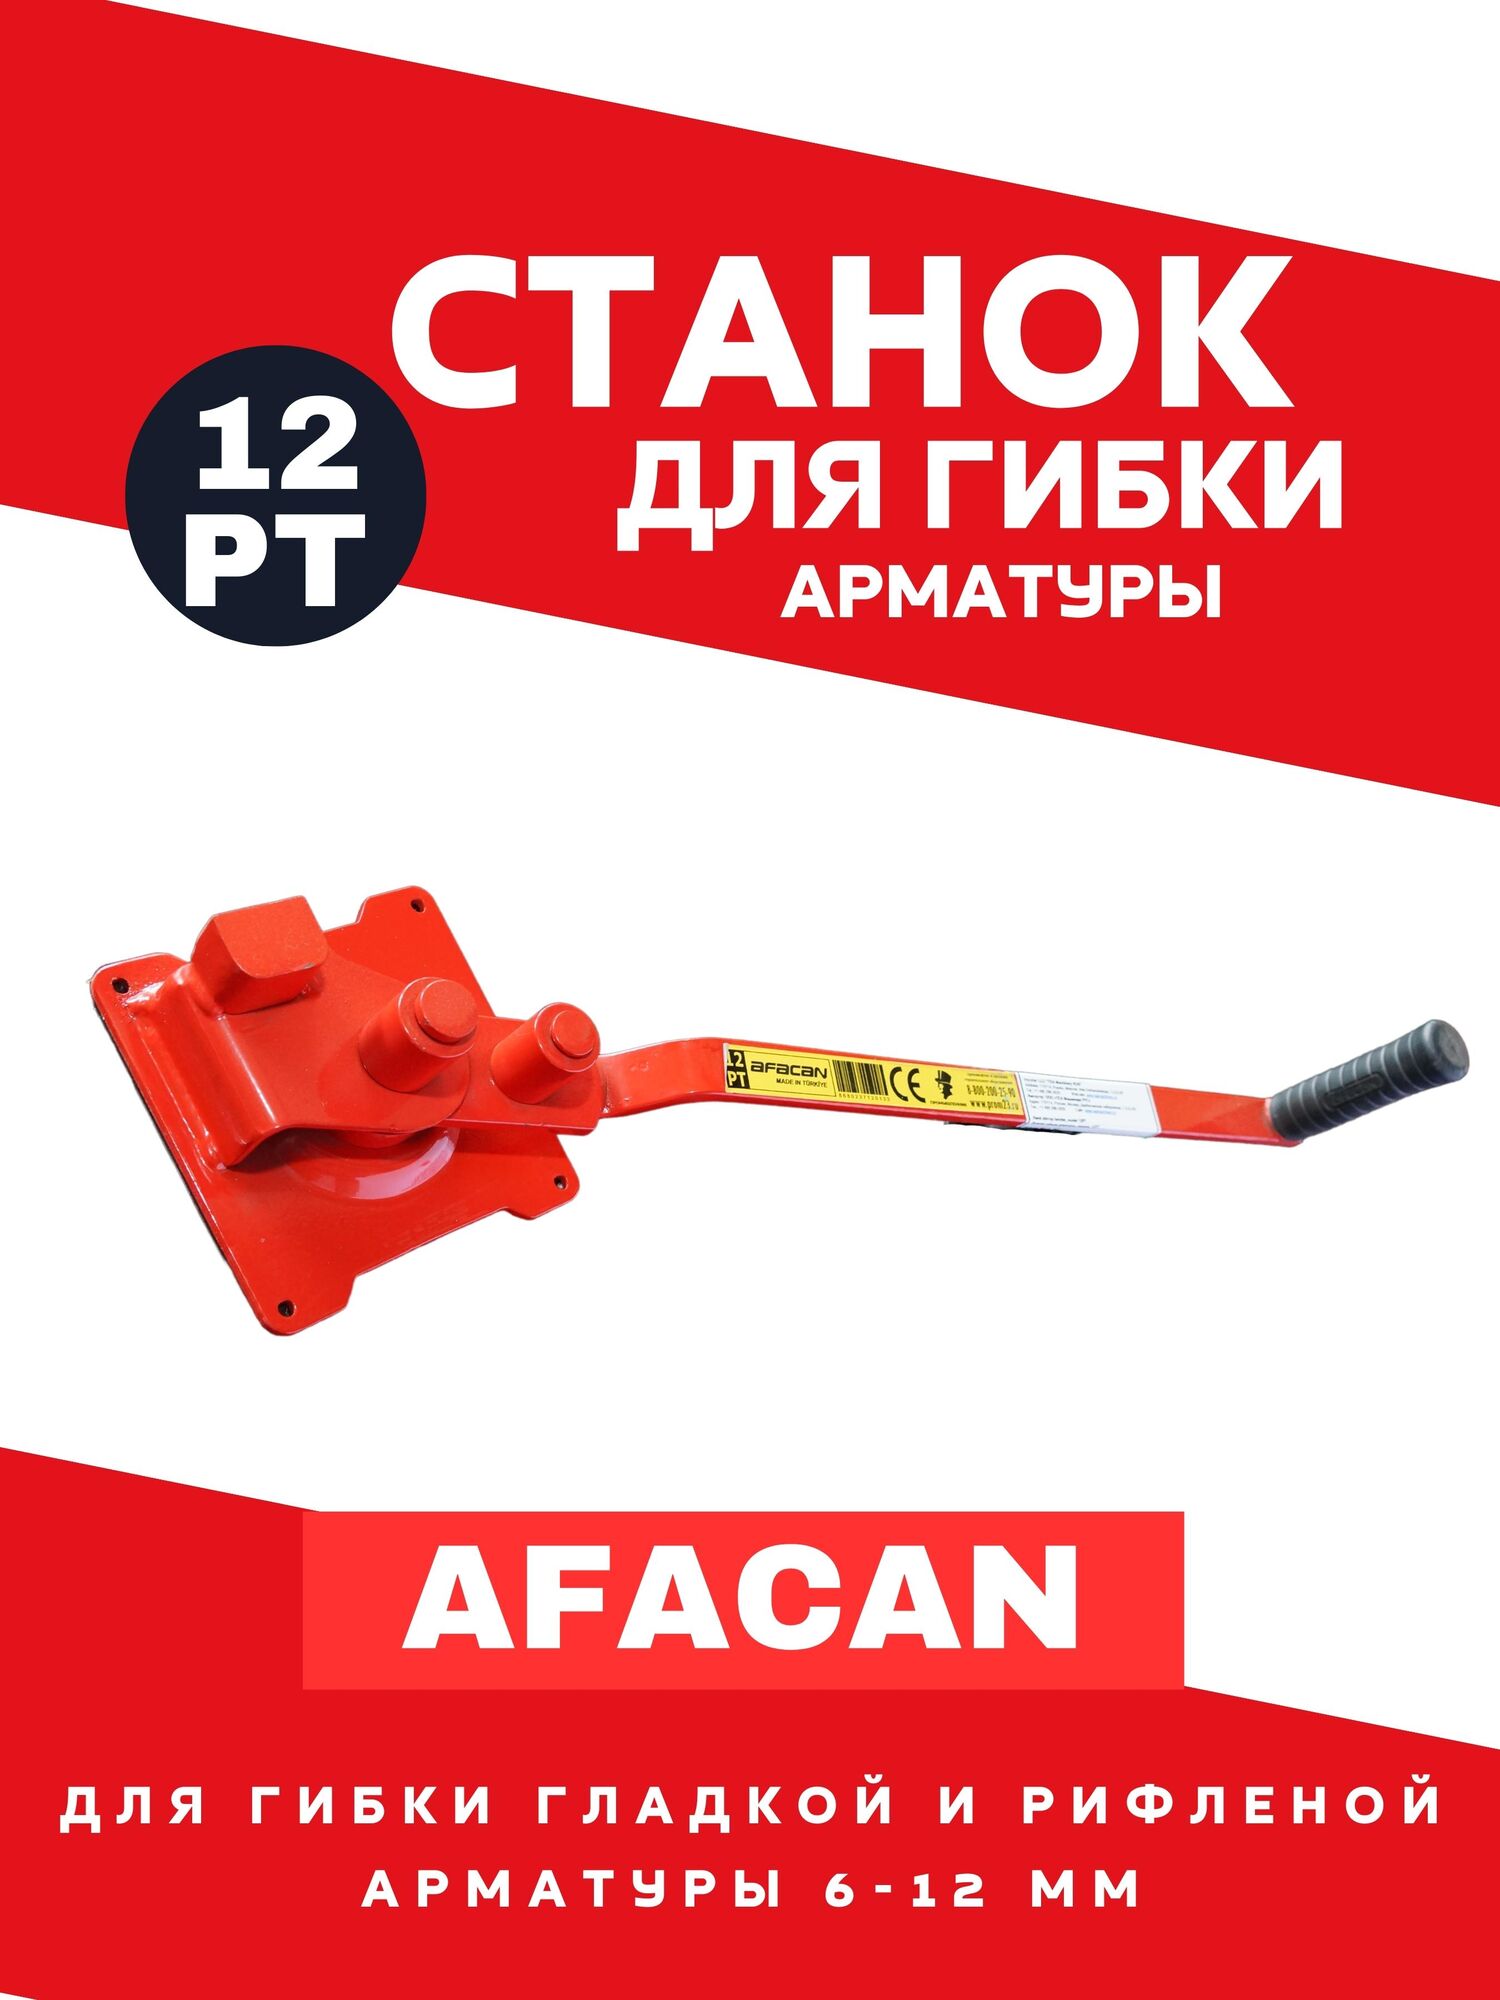 Ручной станок для гибки арматуры AFACAN 12РТ 1